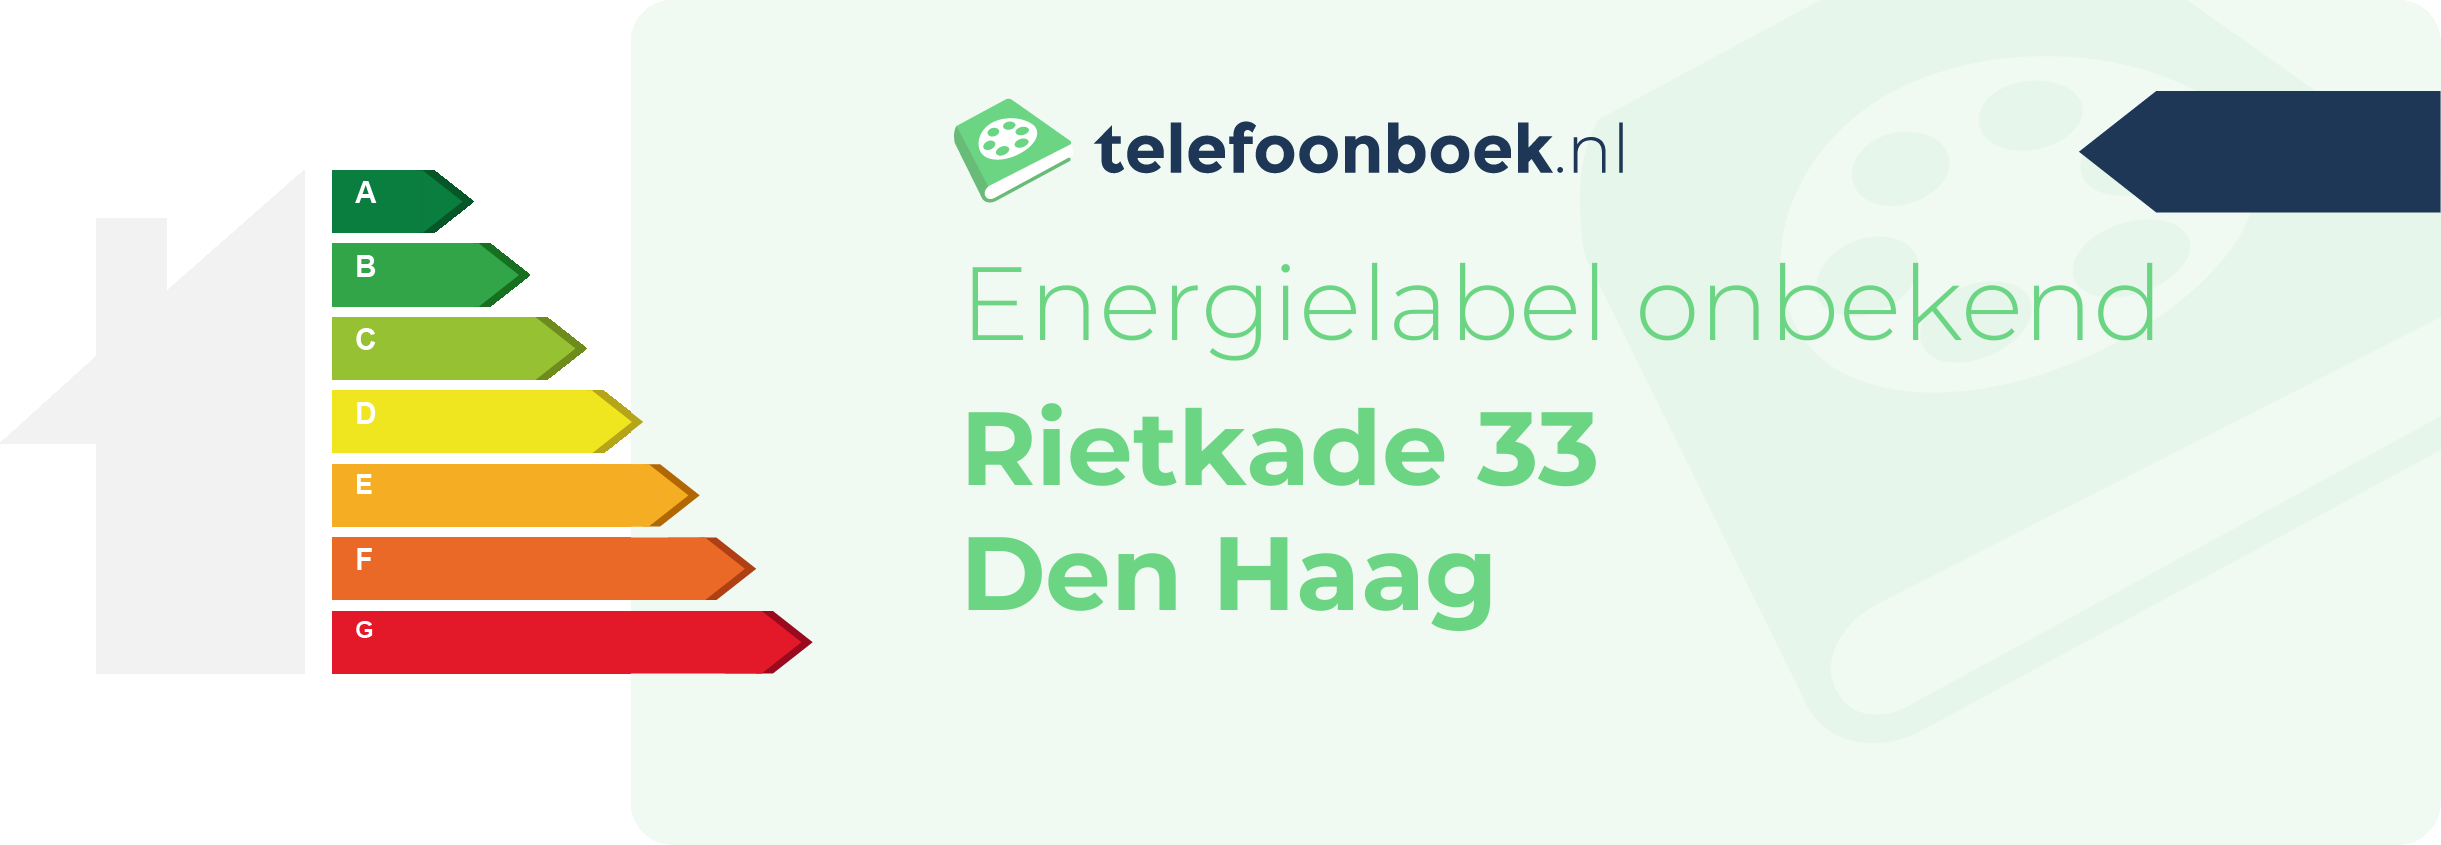 Energielabel Rietkade 33 Den Haag